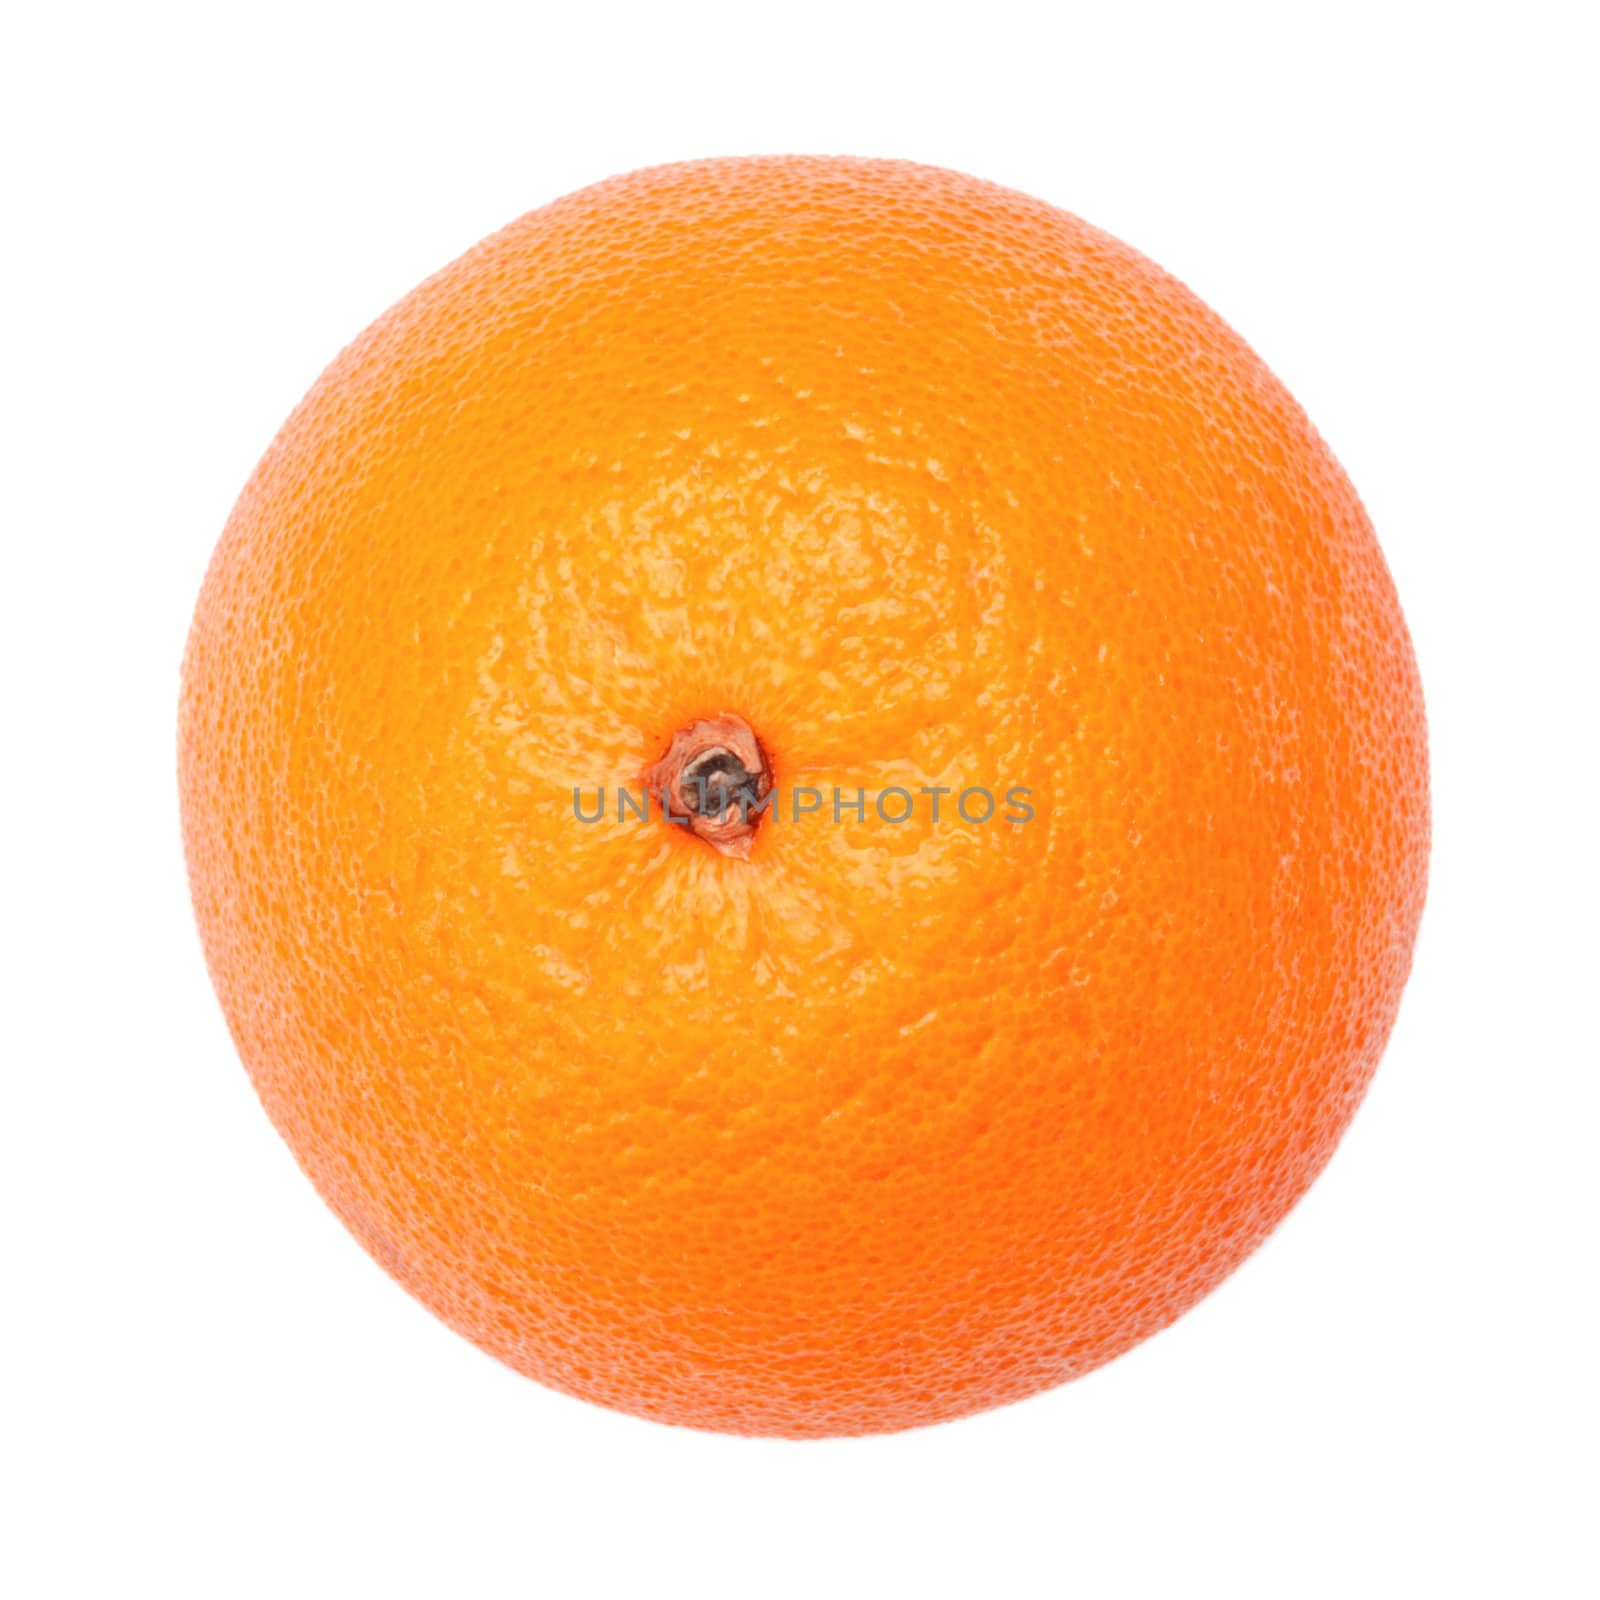 single orange isolated on a white background